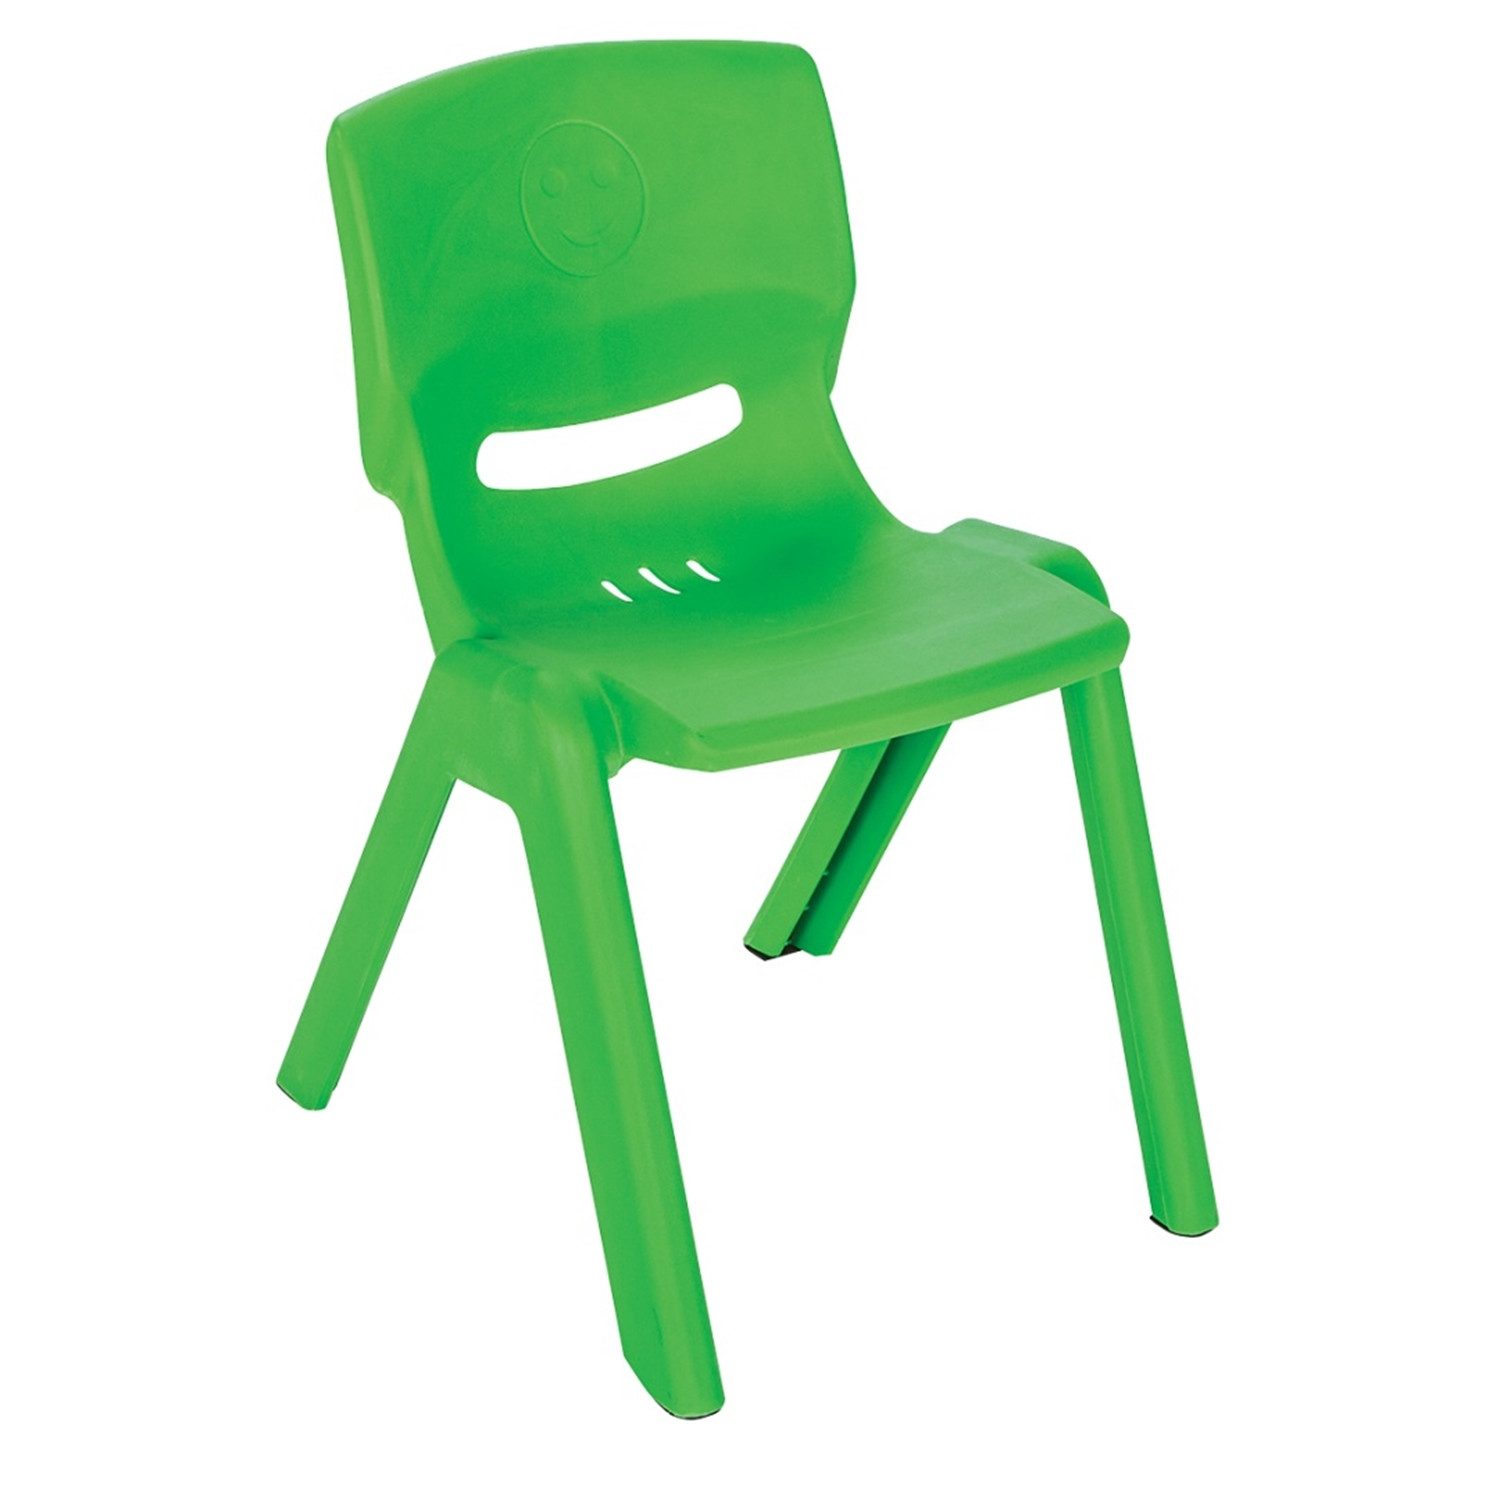 Pilsan Stuhl 20141 Kids Chair grün